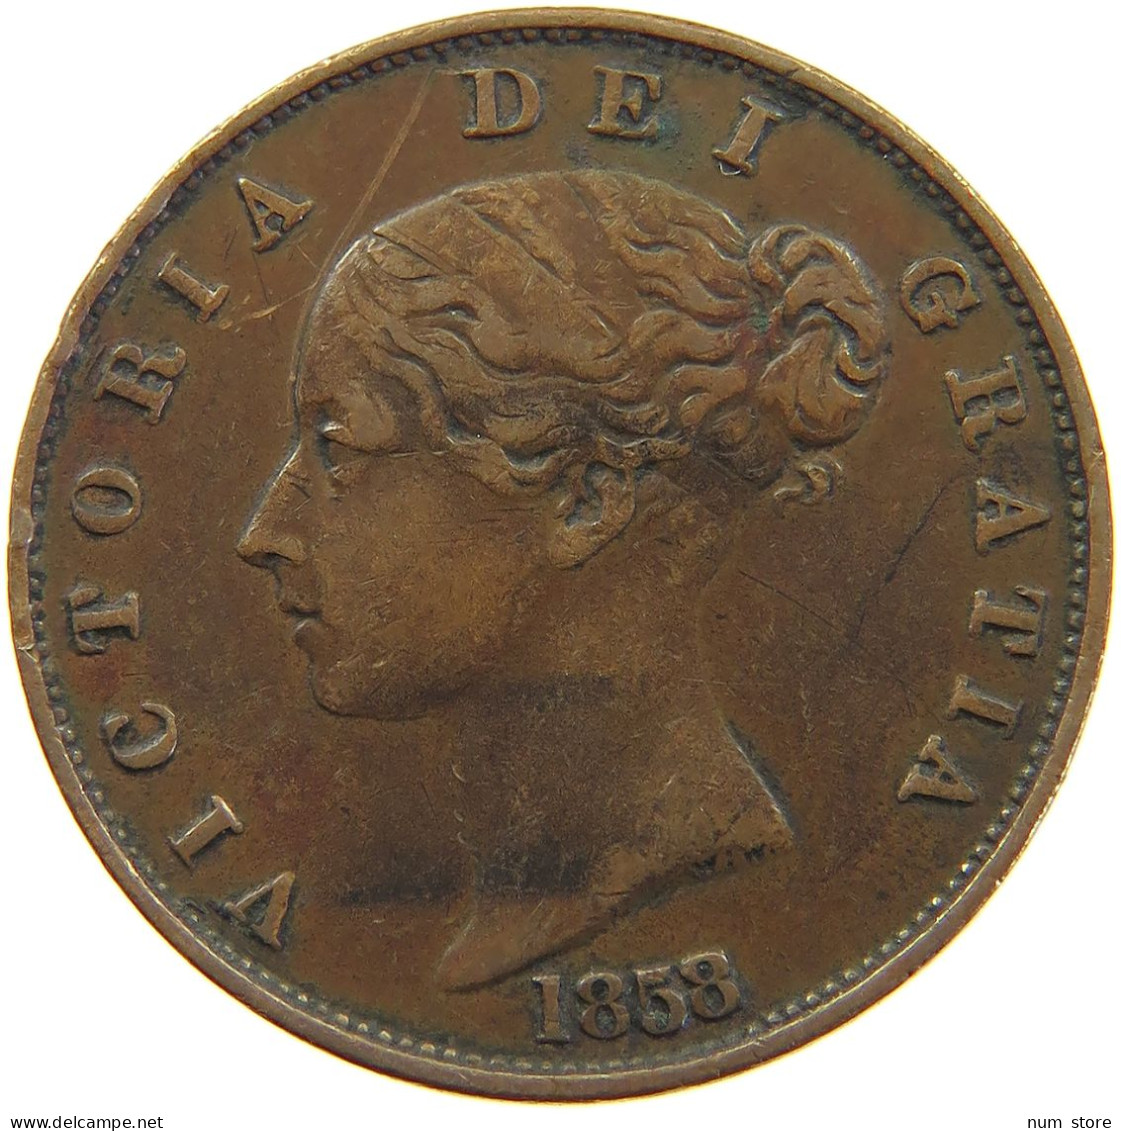 GREAT BRITAIN HALFPENNY 1858 Victoria 1837-1901 #c060 0271 - C. 1/2 Penny